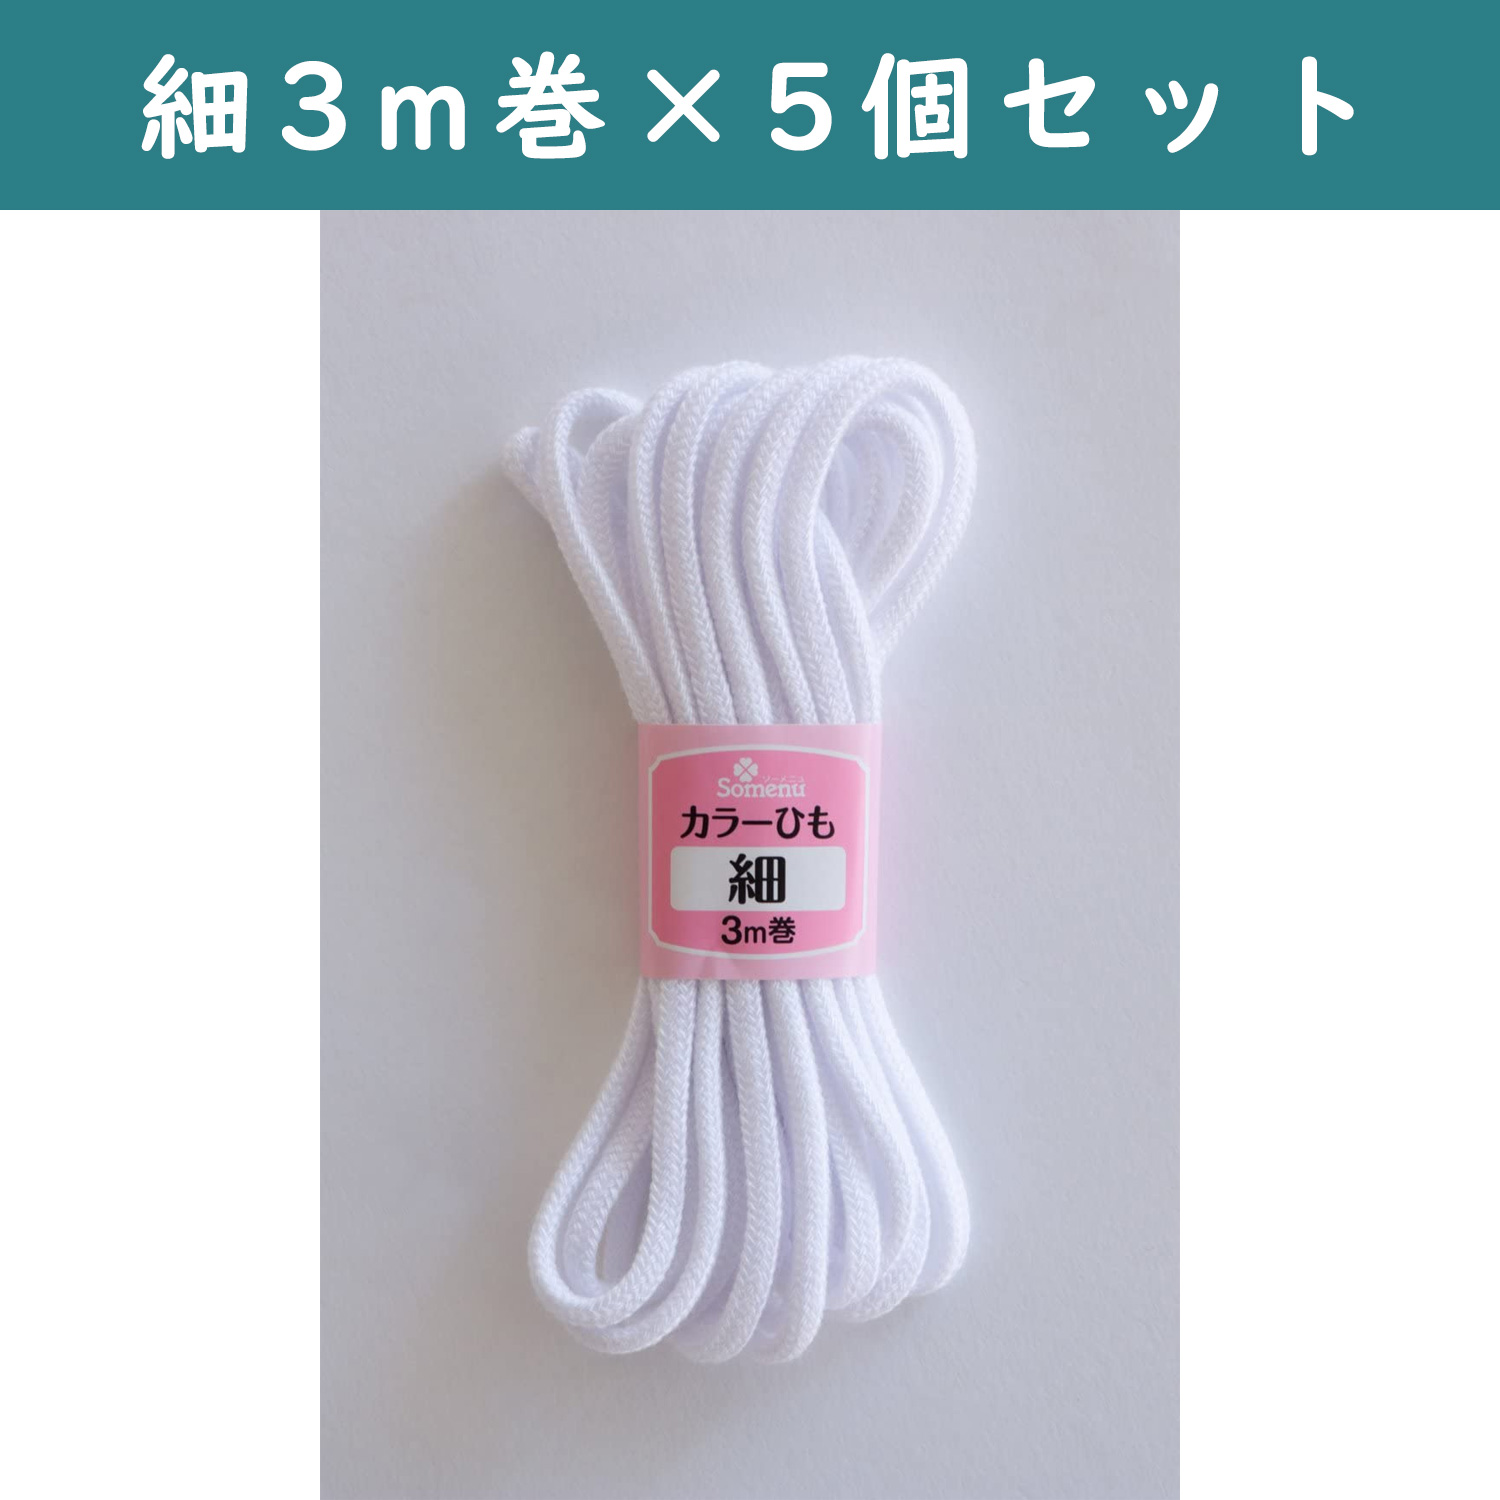 ■【5個】CL26-129-5set カラーひも 細 3m巻 白 5個セット (セット)